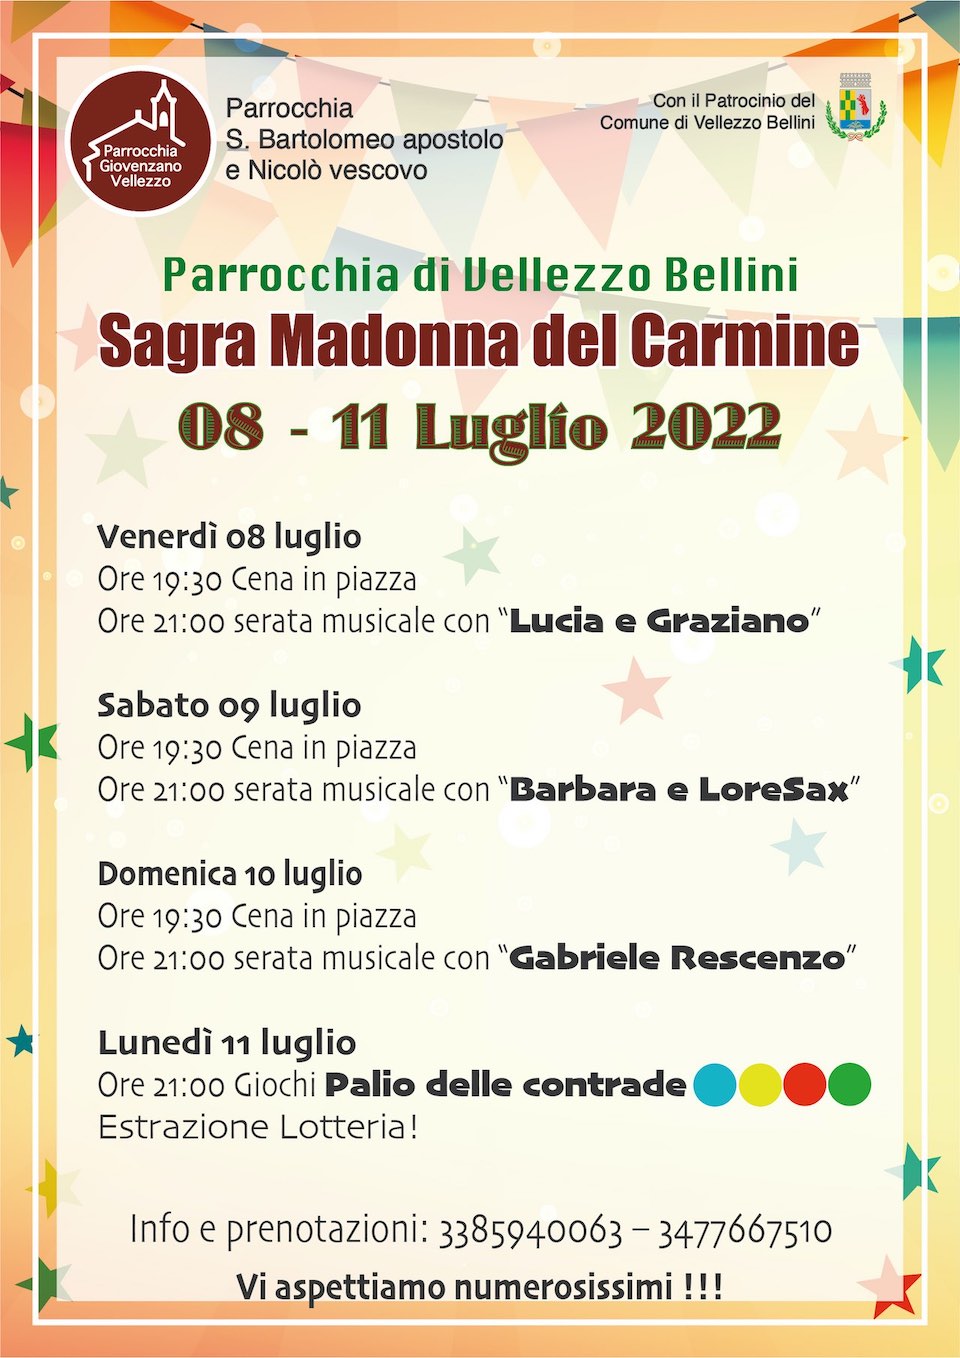 08-11 luglio 2022 Festa Sagra Madonna del Carmine, Parrocchia S. Bartolomeo apostolo e Nicolò Vescovo, Vellezzo Bellini